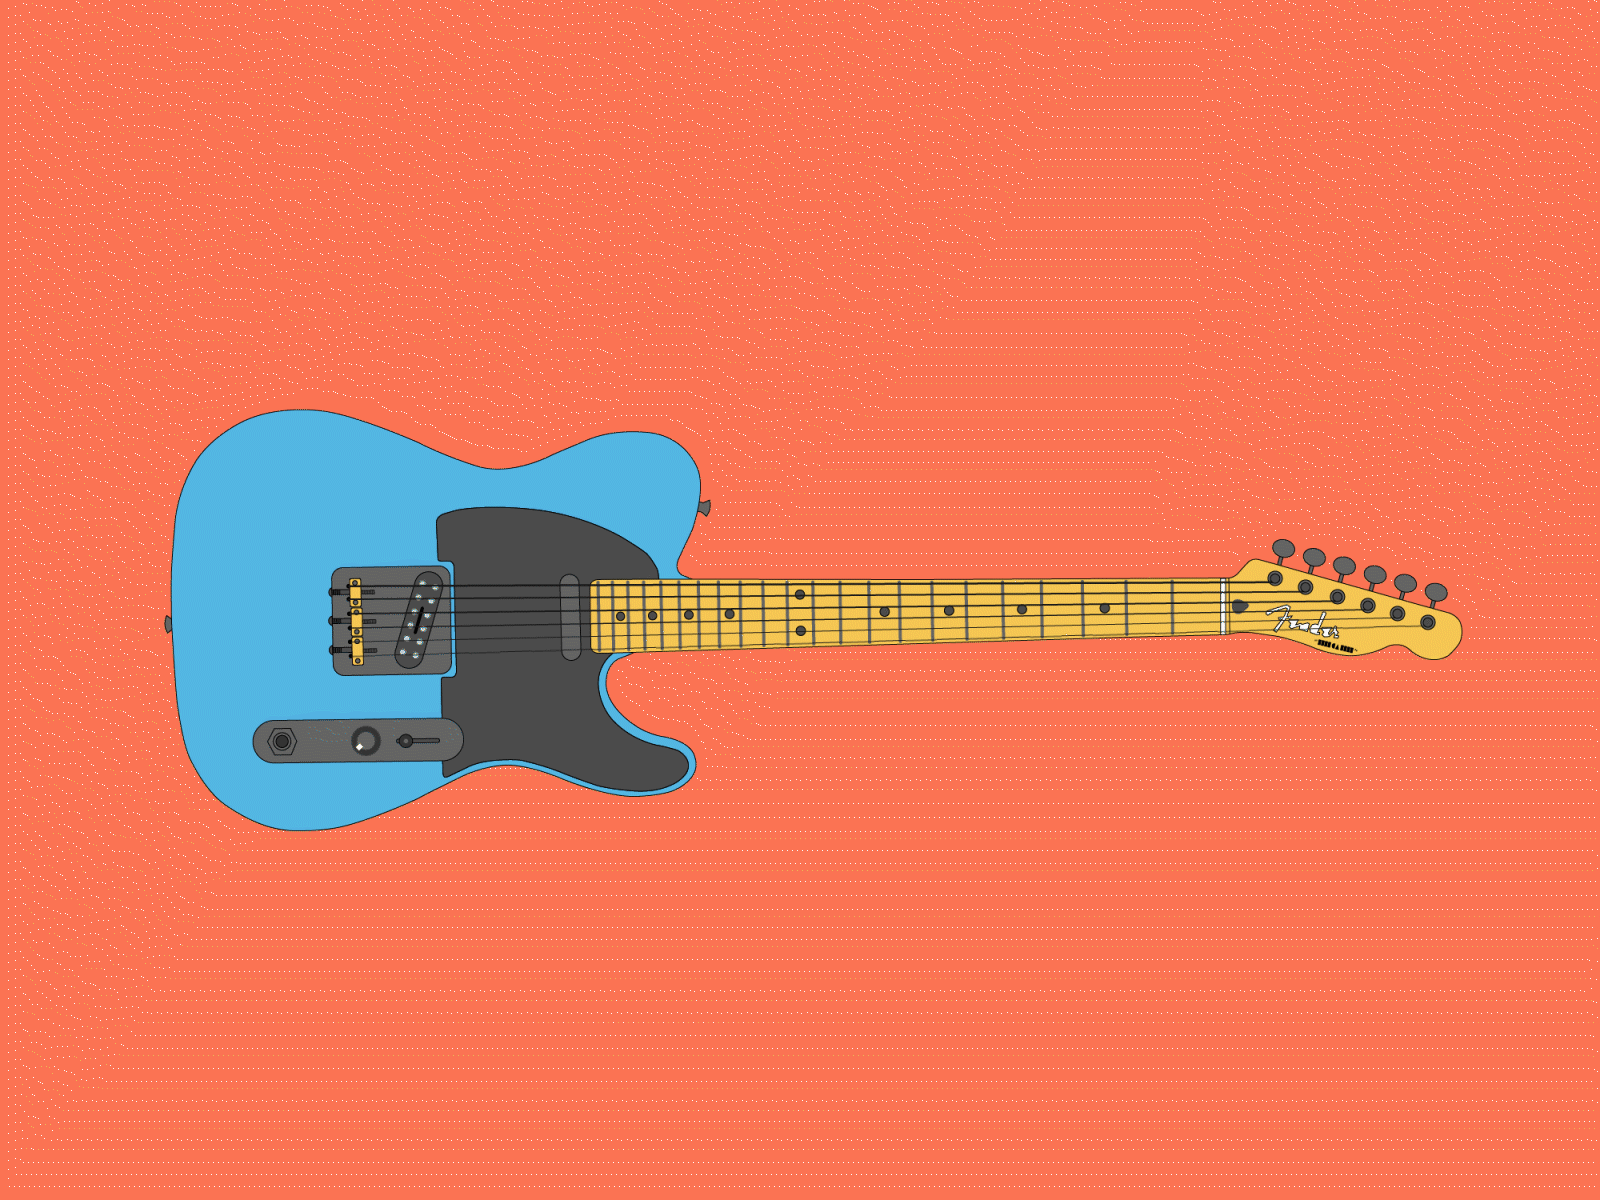 Fender Telecaster Animation adobe after effects adobe illustrator after effects animation design electroguitar fender fender telecaster fendertelecaster guitar illustration